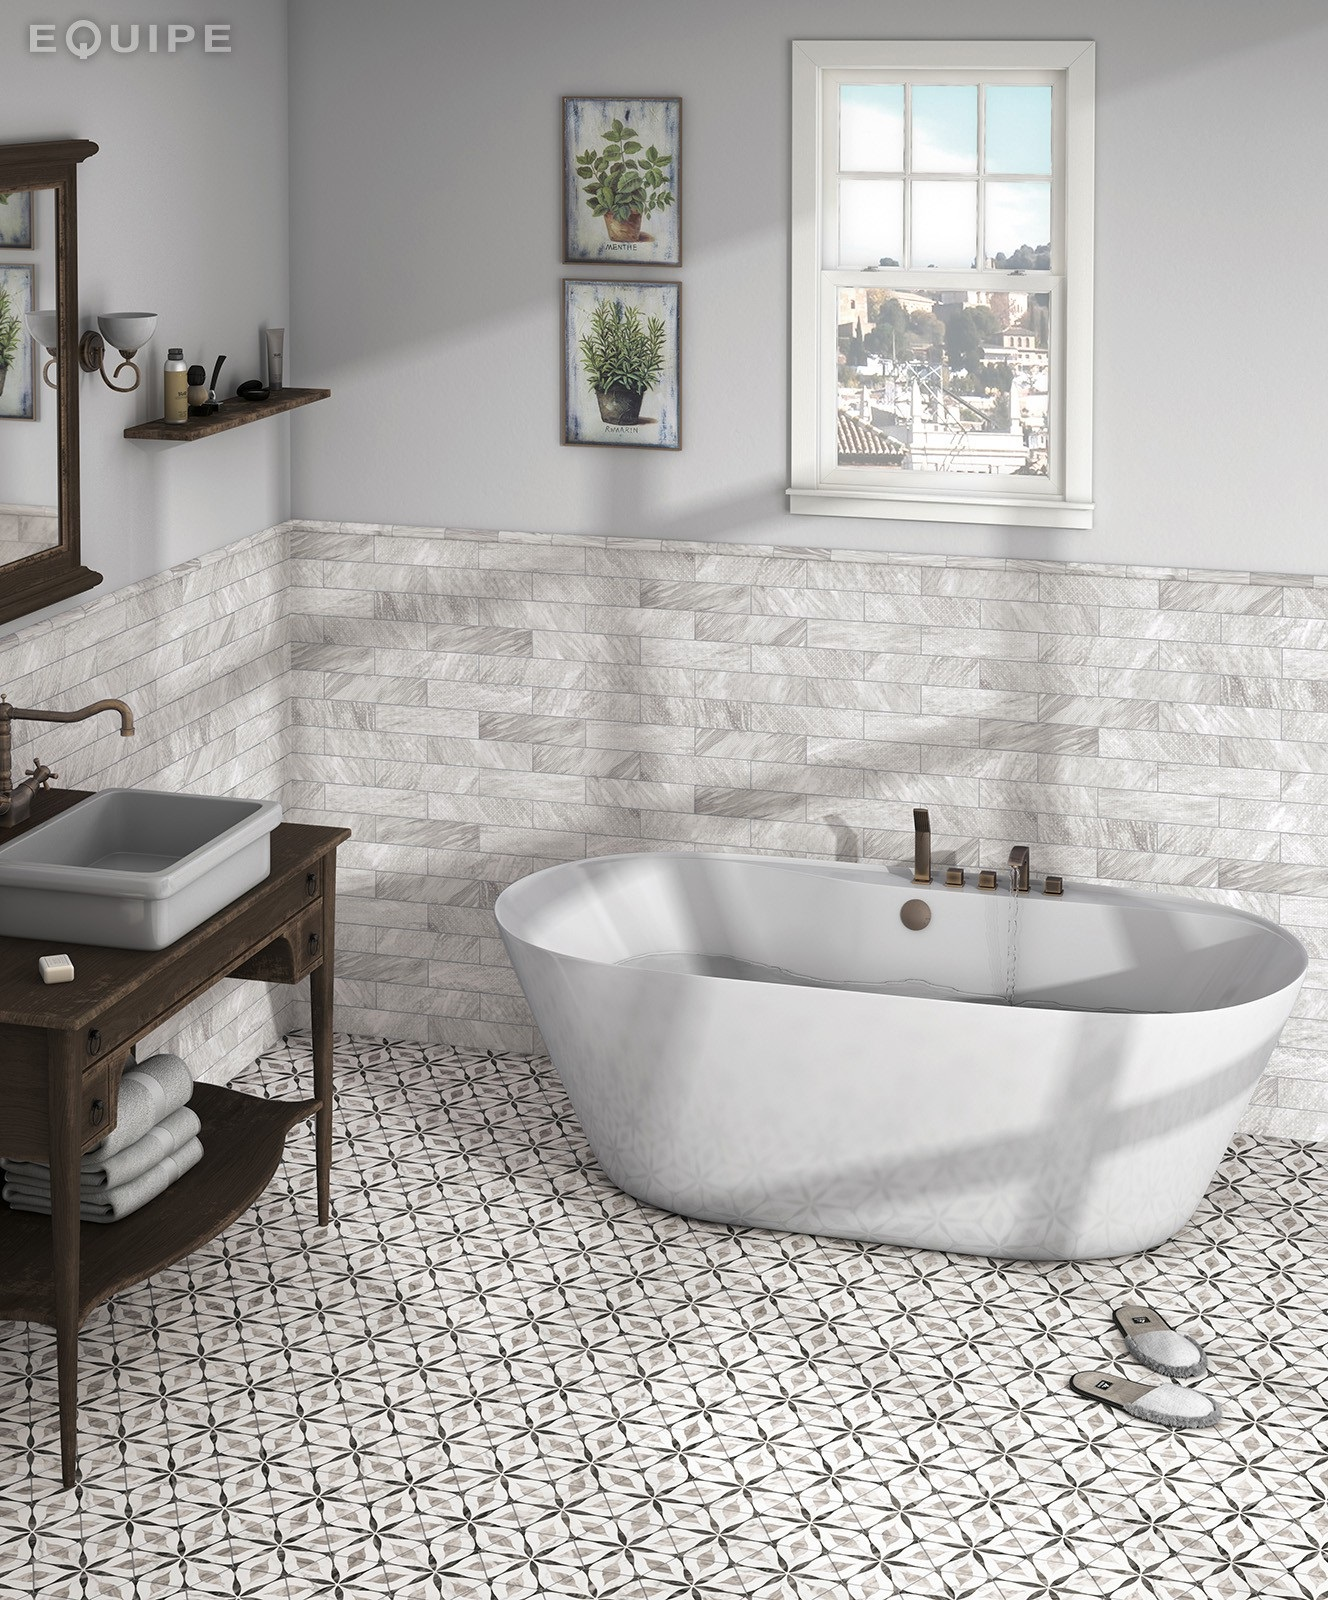 Carreau de ciment gris avec motifs géométriques dans une salle de bain épurée aux murs blancs et détails en bois